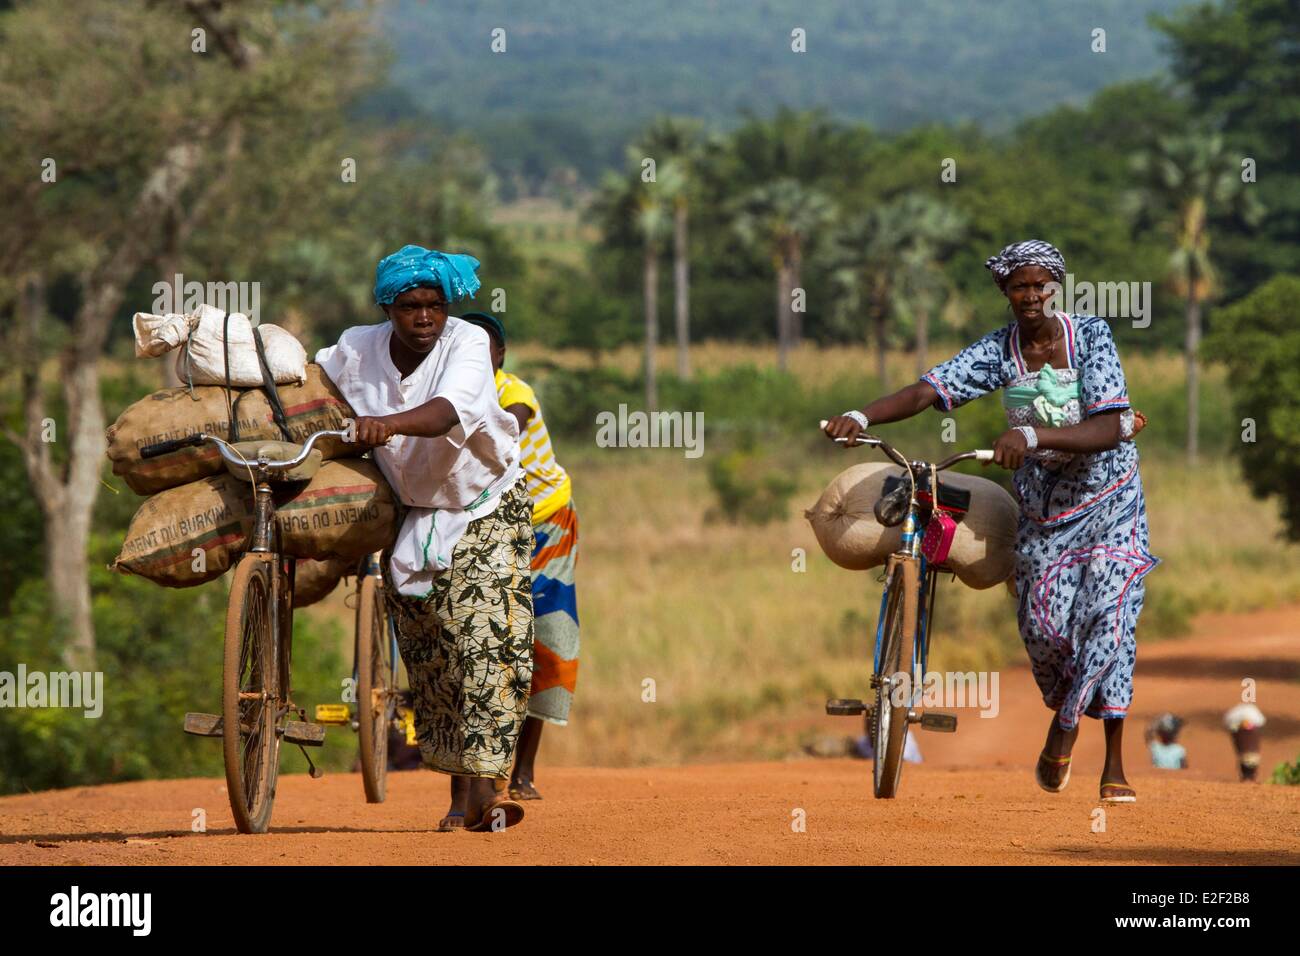 Le Burkina Faso, les femmes dans la région Sénoufo Banque D'Images